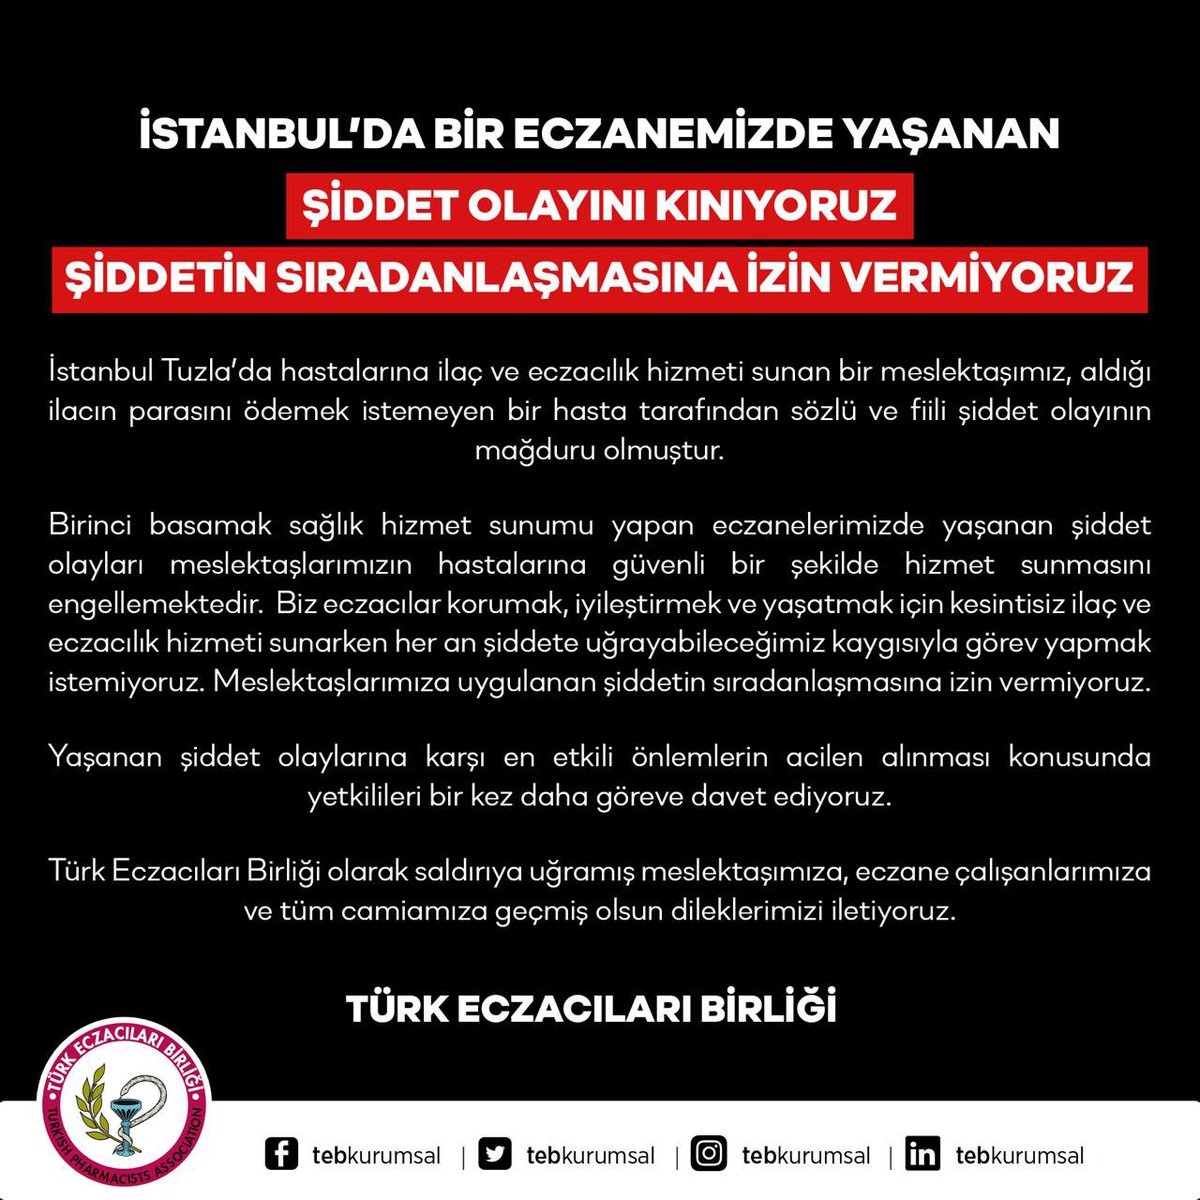 İSTANBUL’DA BİR ECZANEMİZDE YAŞANAN ŞİDDET OLAYINI KINIYORUZ ŞİDDETİN SIRADANLAŞMASINA İZİN VERMİYORUZ! Yaşanan şiddet olaylarına karşı en etkili önlemlerin acilen alınması konusunda yetkilileri bir kez daha göreve davet ediyoruz. Türk Eczacıları Birliği olarak saldırıya uğramış